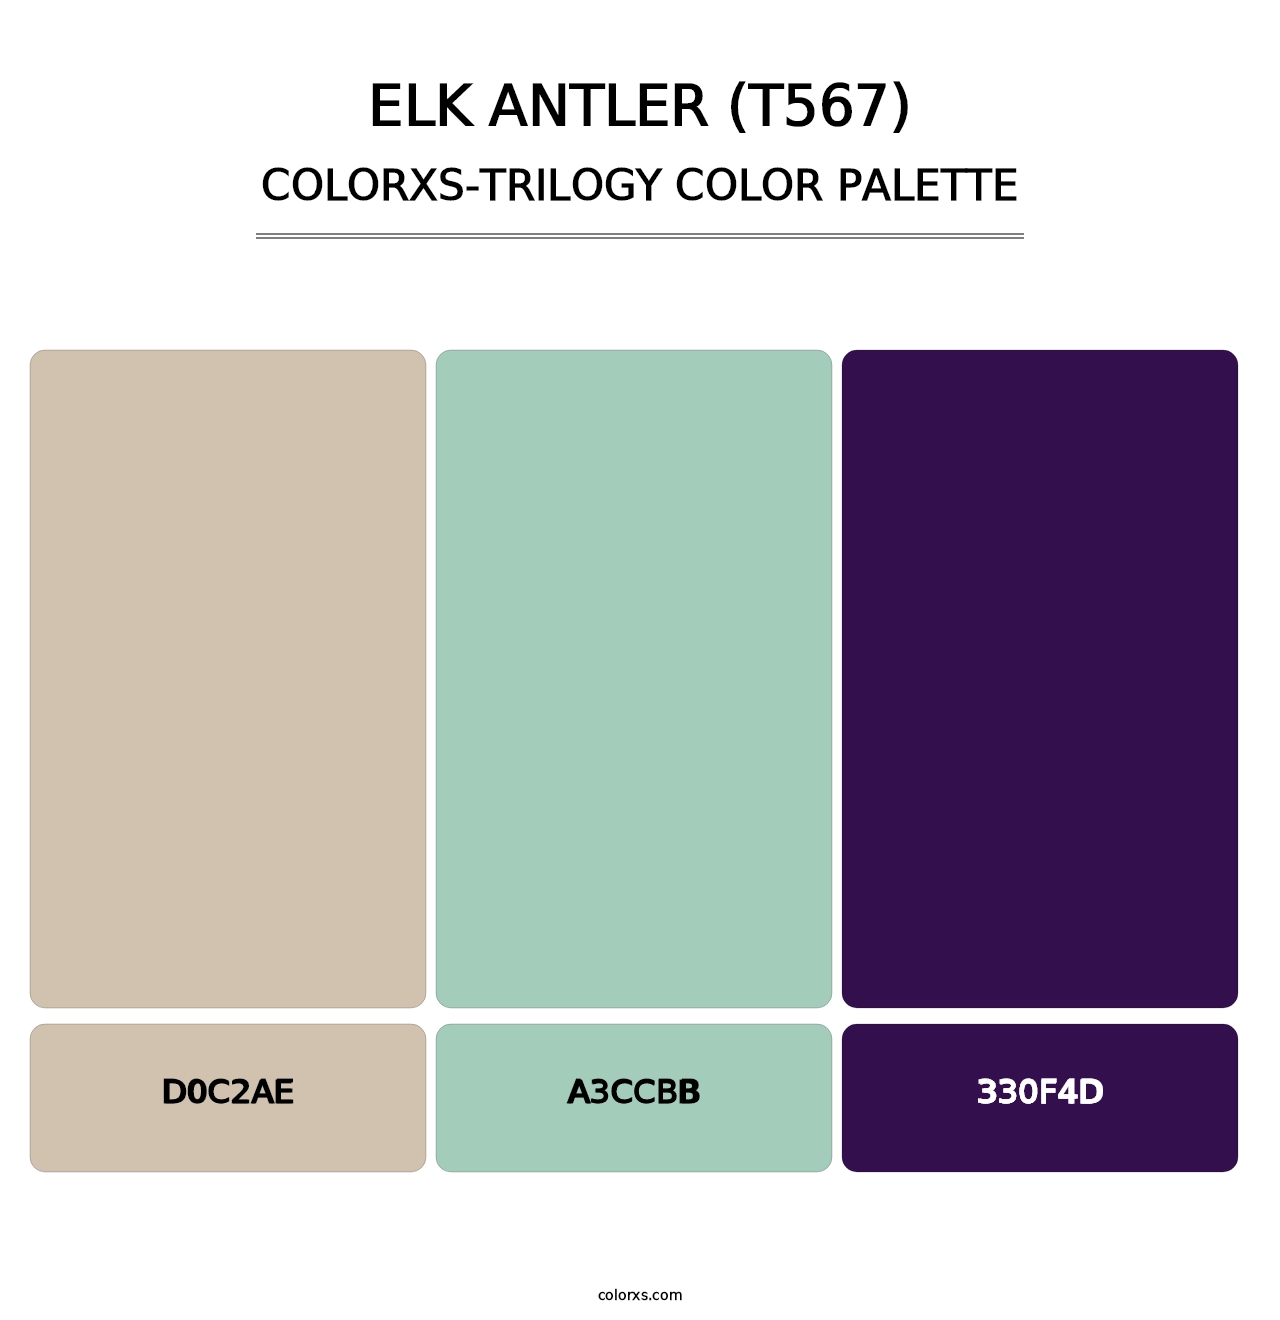 Elk Antler (T567) - Colorxs Trilogy Palette